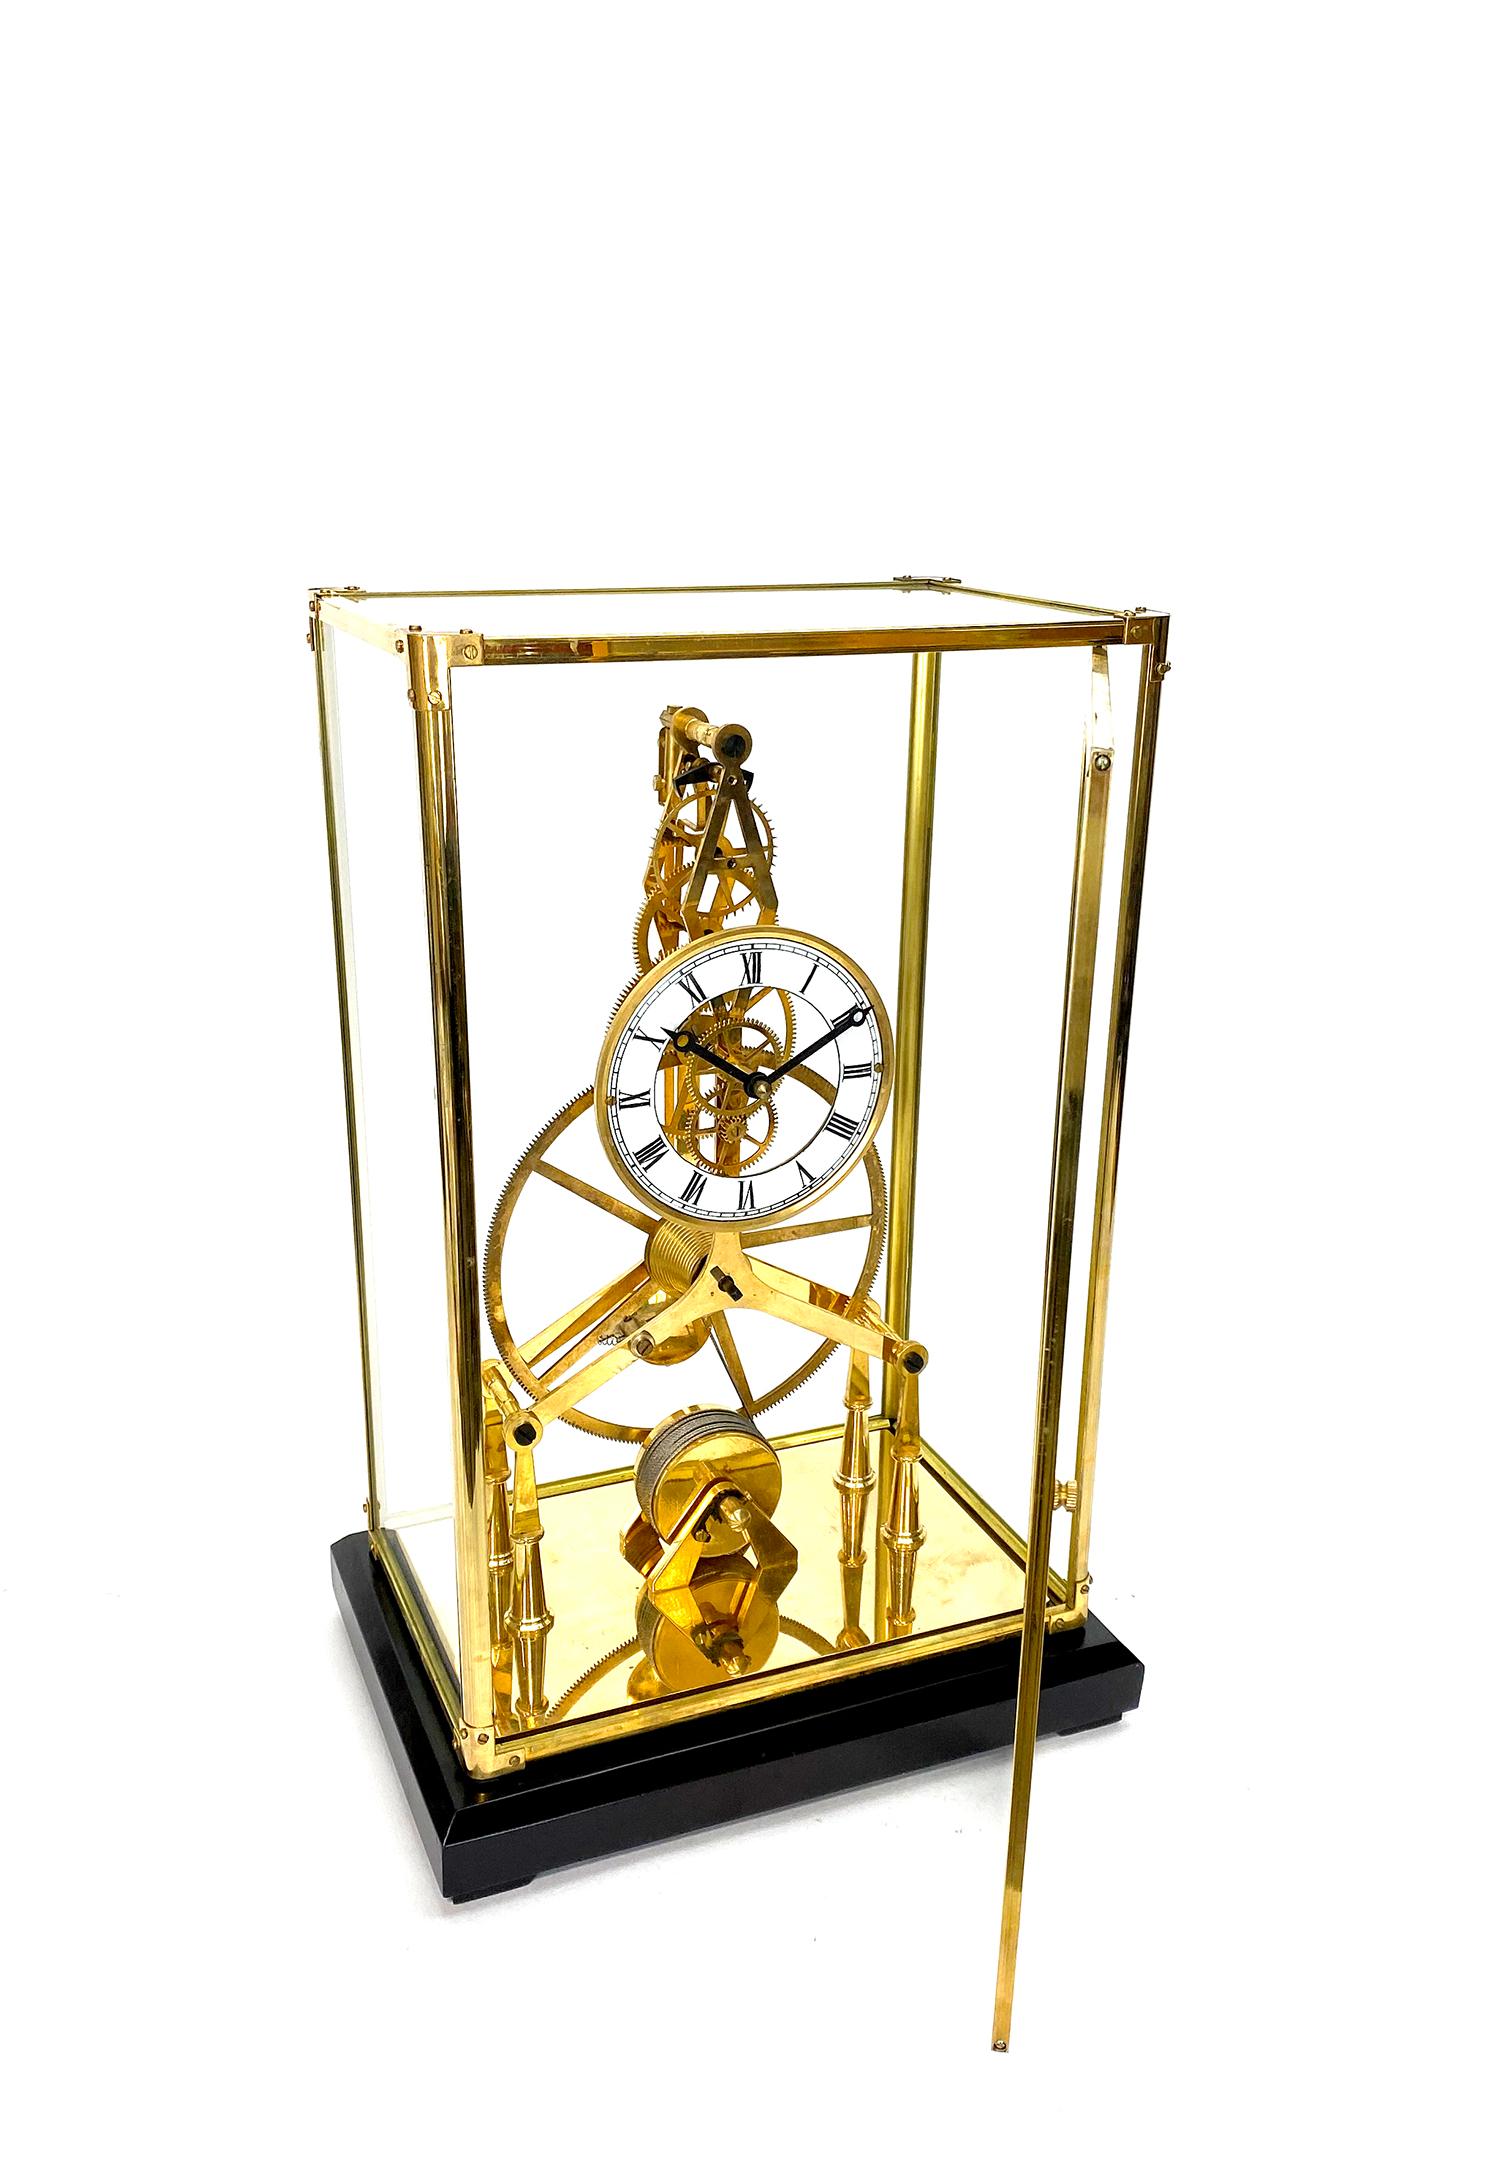 24K Gold plattiert 8 Day Great Wheel Fusee angetrieben Porzellan Zifferblatt Skelett Uhr

Hier ist eine sehr schön aussehende 24K plattiert große Skelett-Uhr, in einem Messingrahmen Glas Fall untergebracht. Sie hat eine nach vorne zu öffnende Tür,